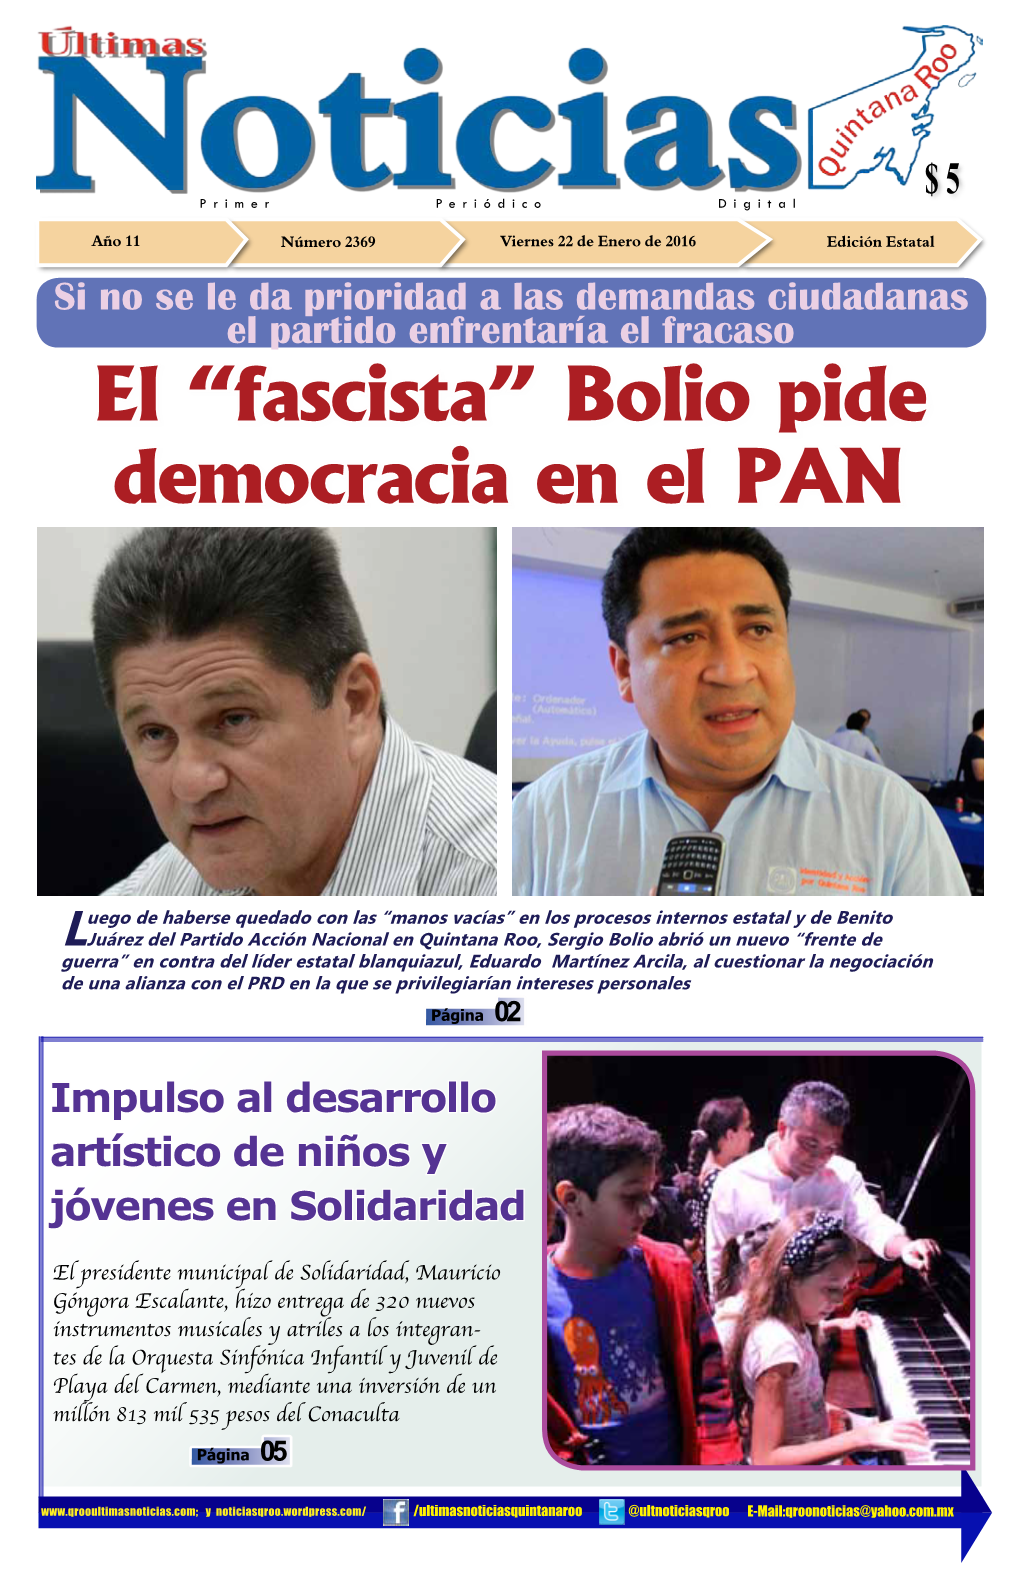 El “Fascista” Bolio Pide Democracia En El PAN